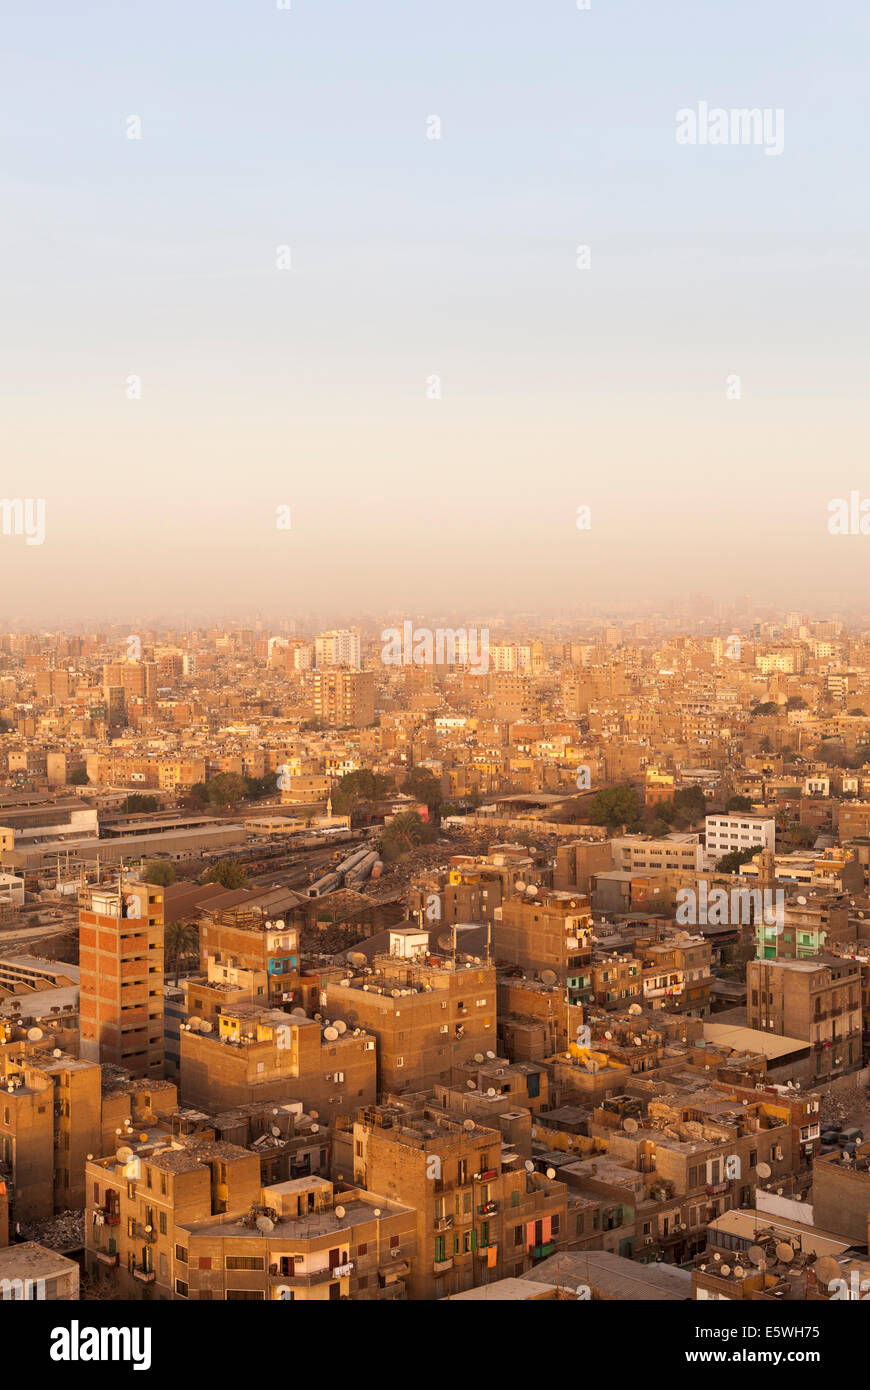 Los techos de los edificios de los barrios de tugurios en el centro de El Cairo, Egipto Foto de stock